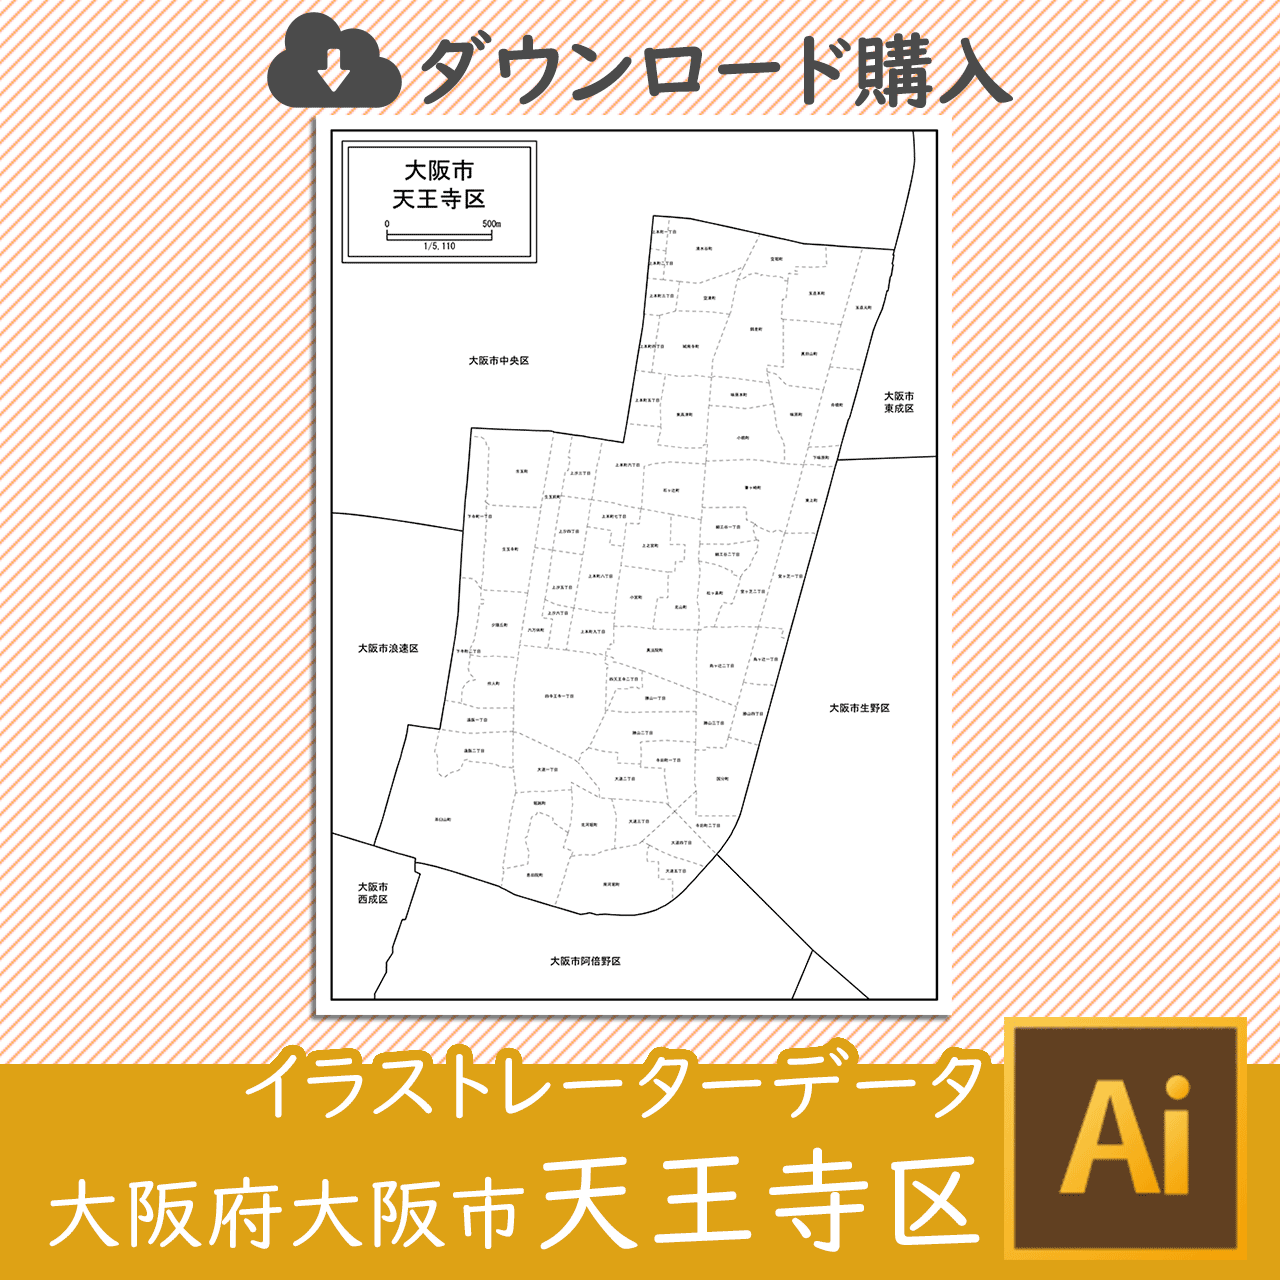 大阪市天王寺区の白地図のサムネイル画像